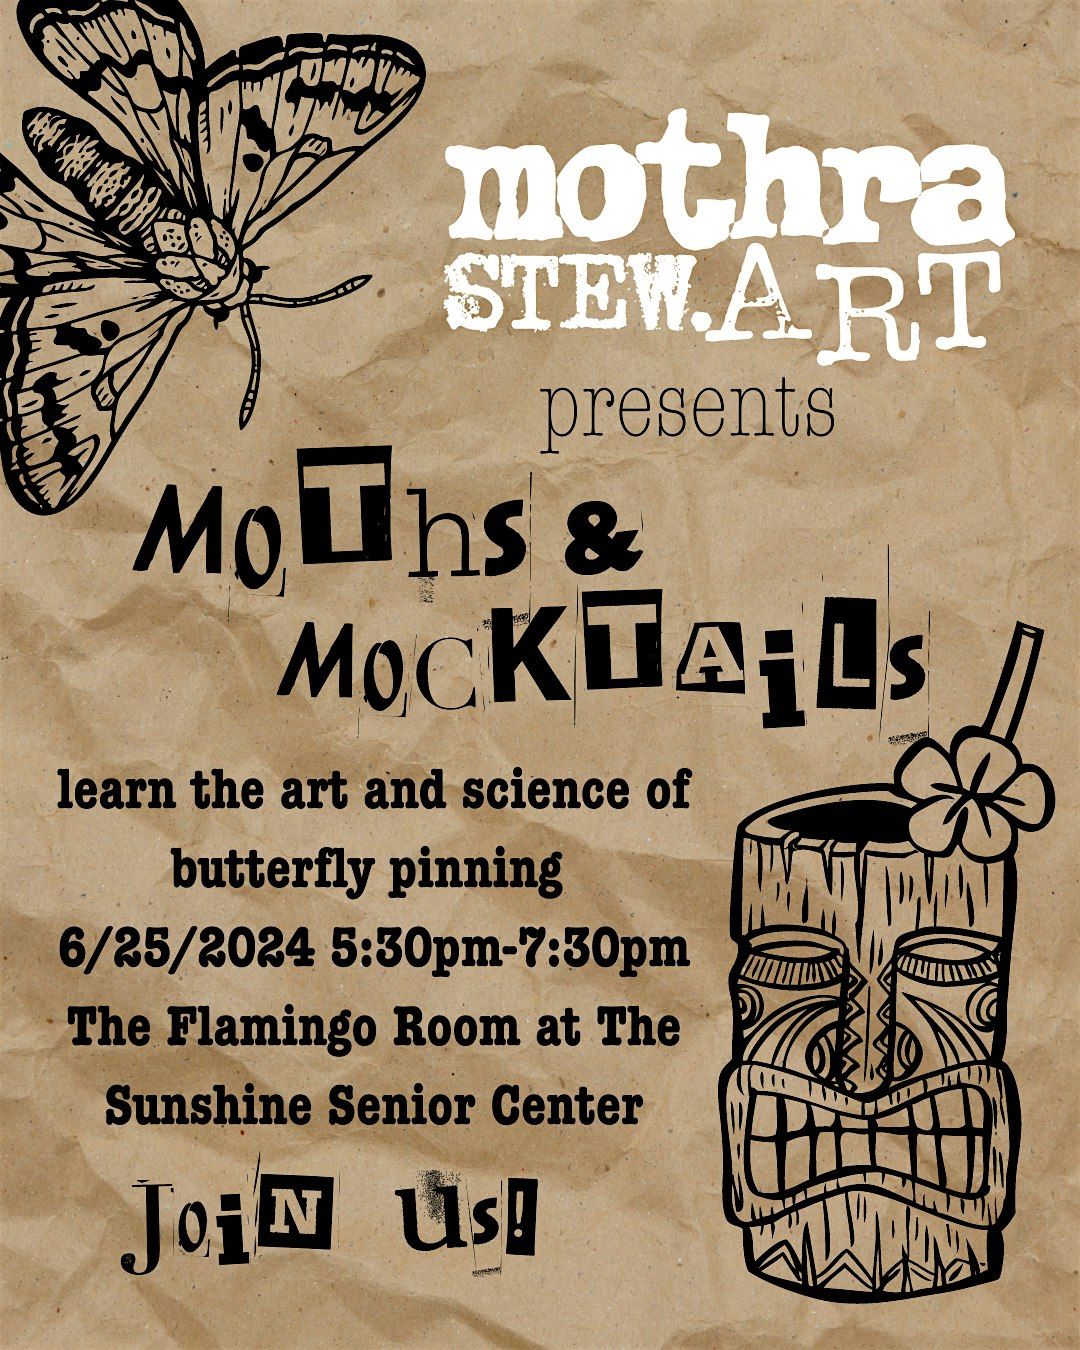 Moths & Mocktails! Butterfly Pinning Class